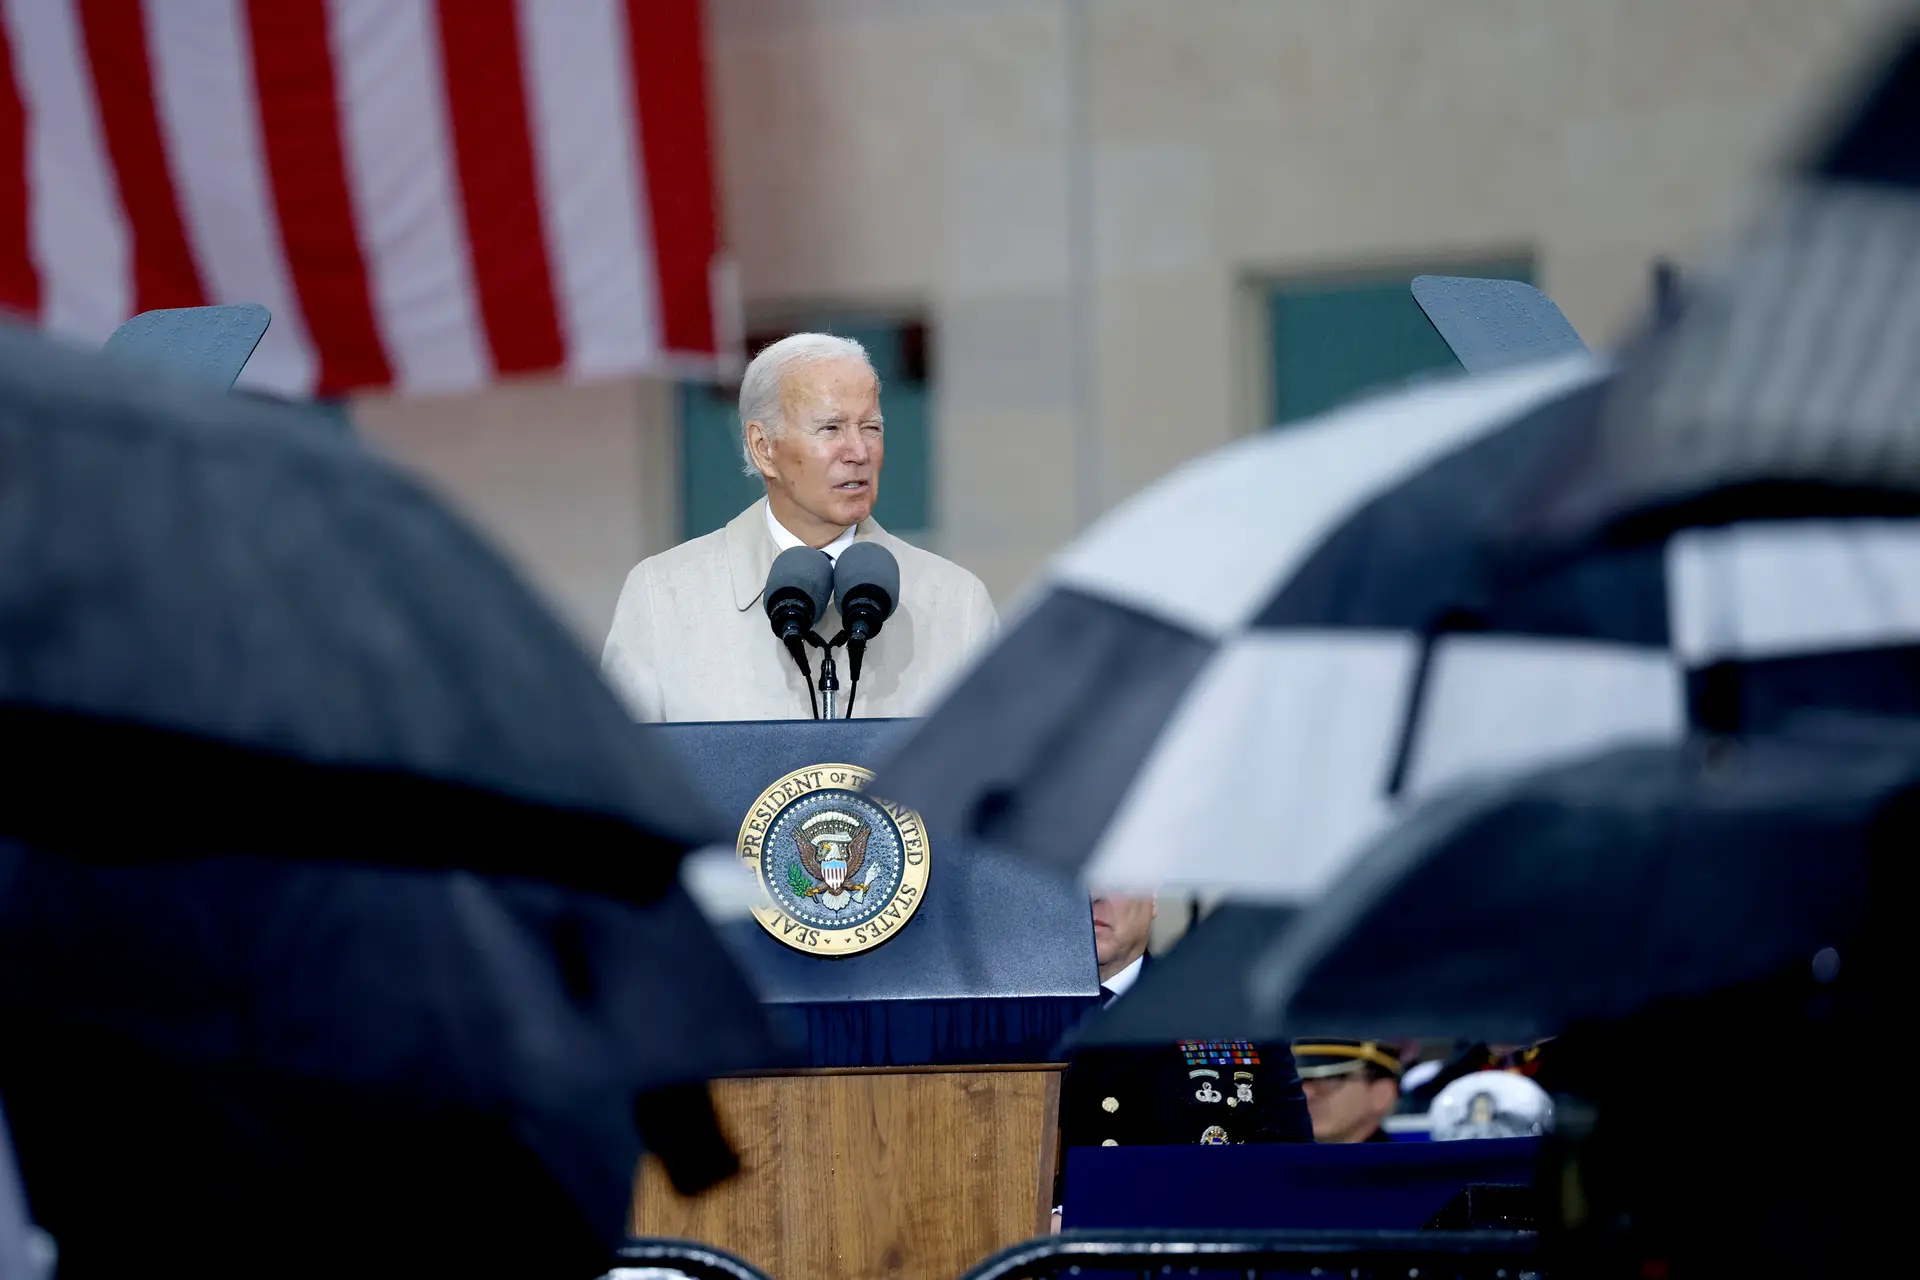 11 de setembro: "Depois de 21 anos, mantivemos a nossa promessa de nunca esquecer", afirma Joe Biden